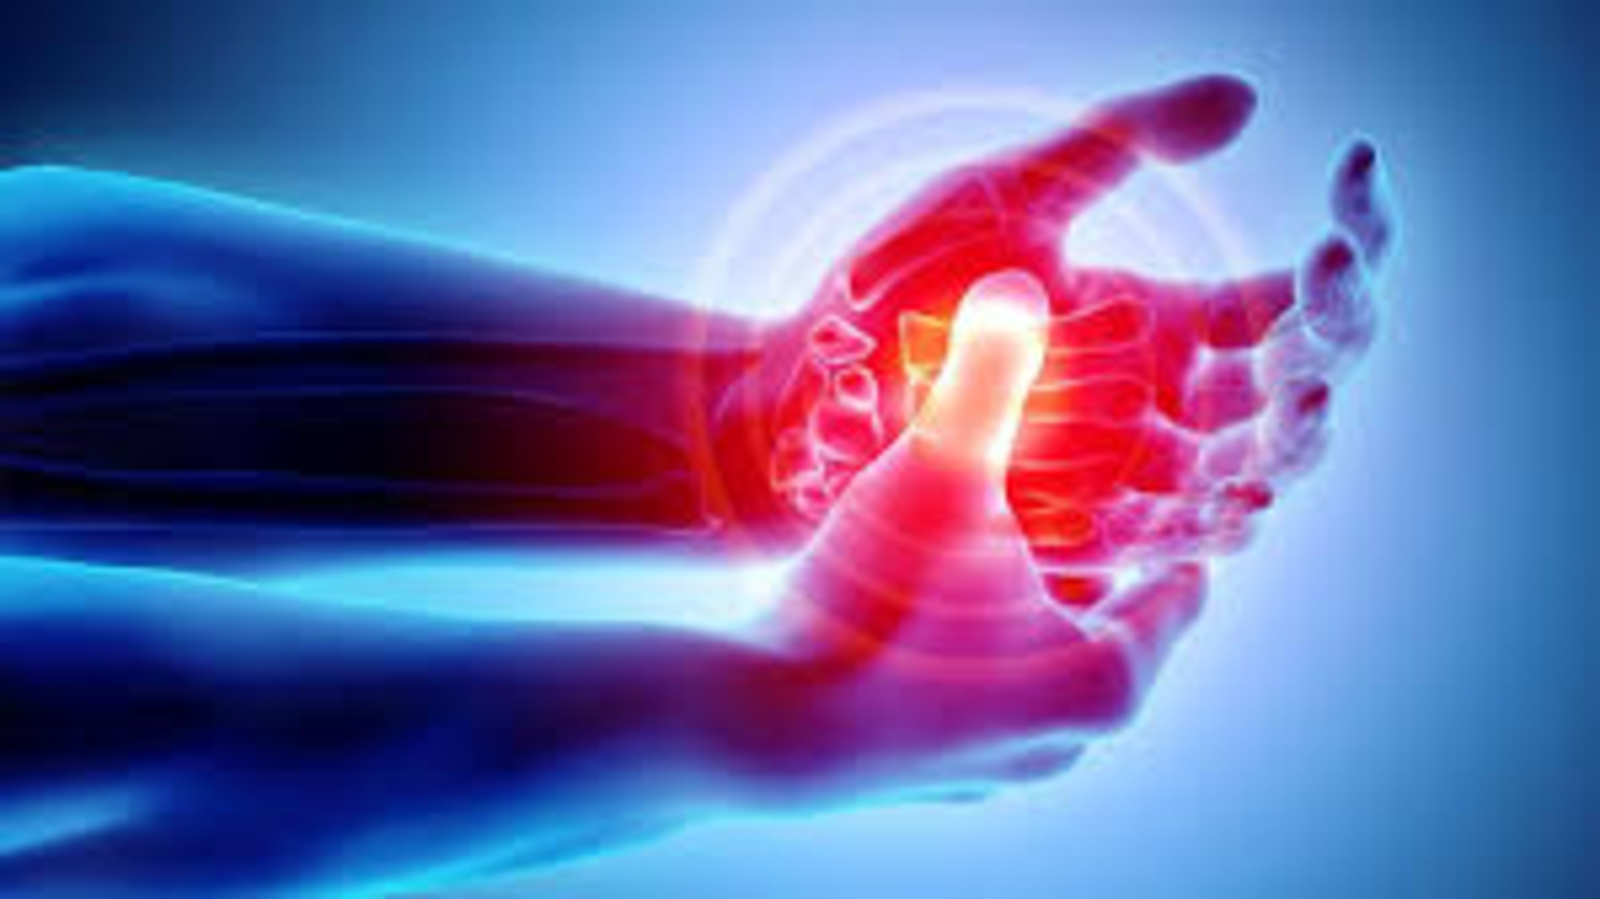 관절염: 통증과 부기를 완화하는 데 도움이 되는 5가지 생활 습관 |  건강